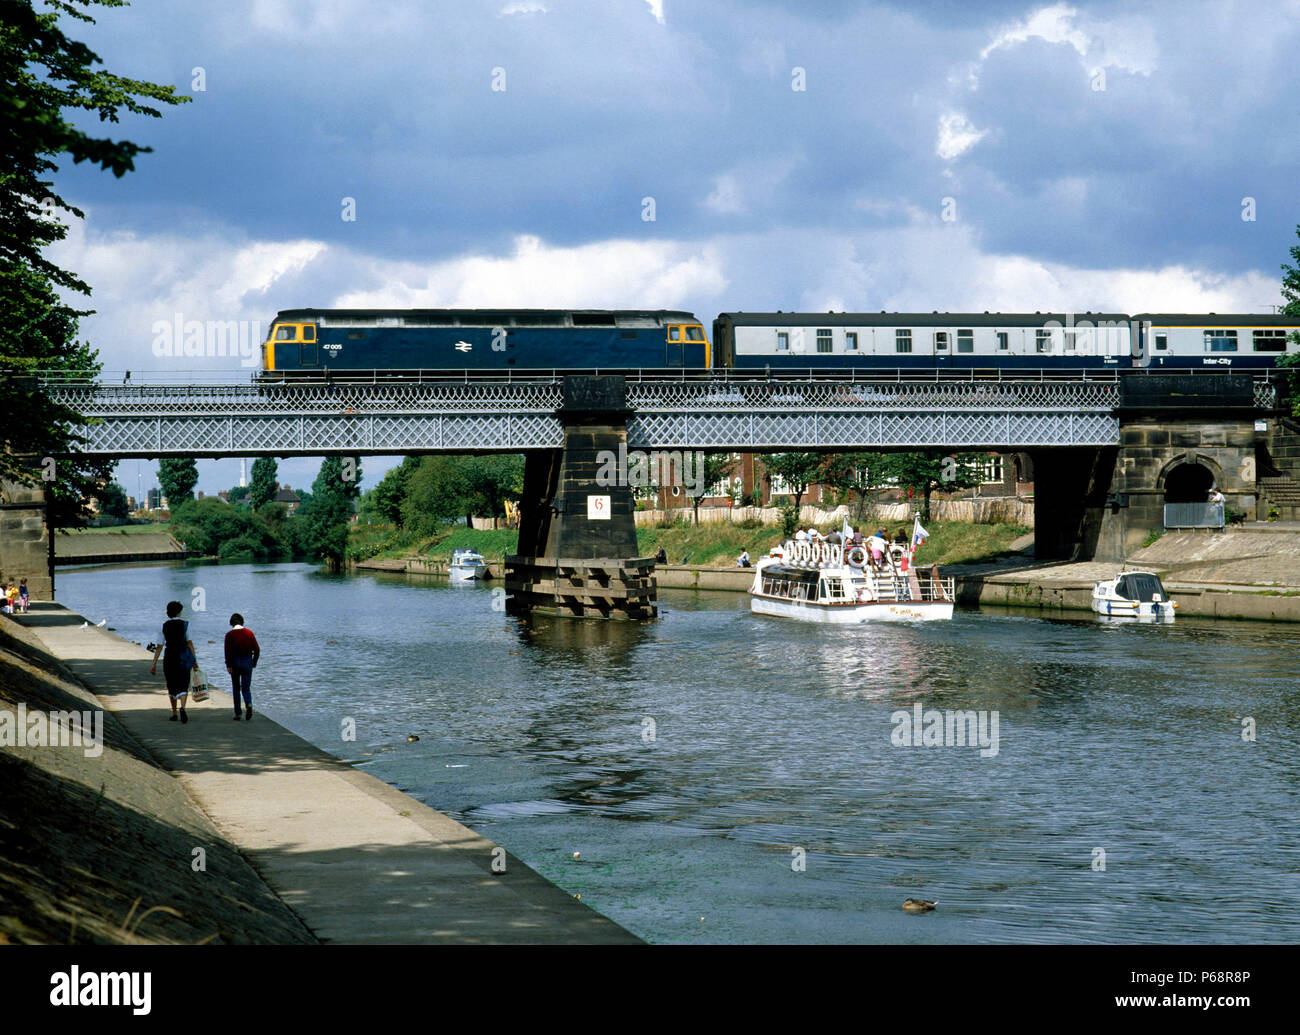 York.No.47.005 arriva in York sul fiume Ouse con la 11:00 ex Scarborough per Chester. 02.08.1983. Foto Stock